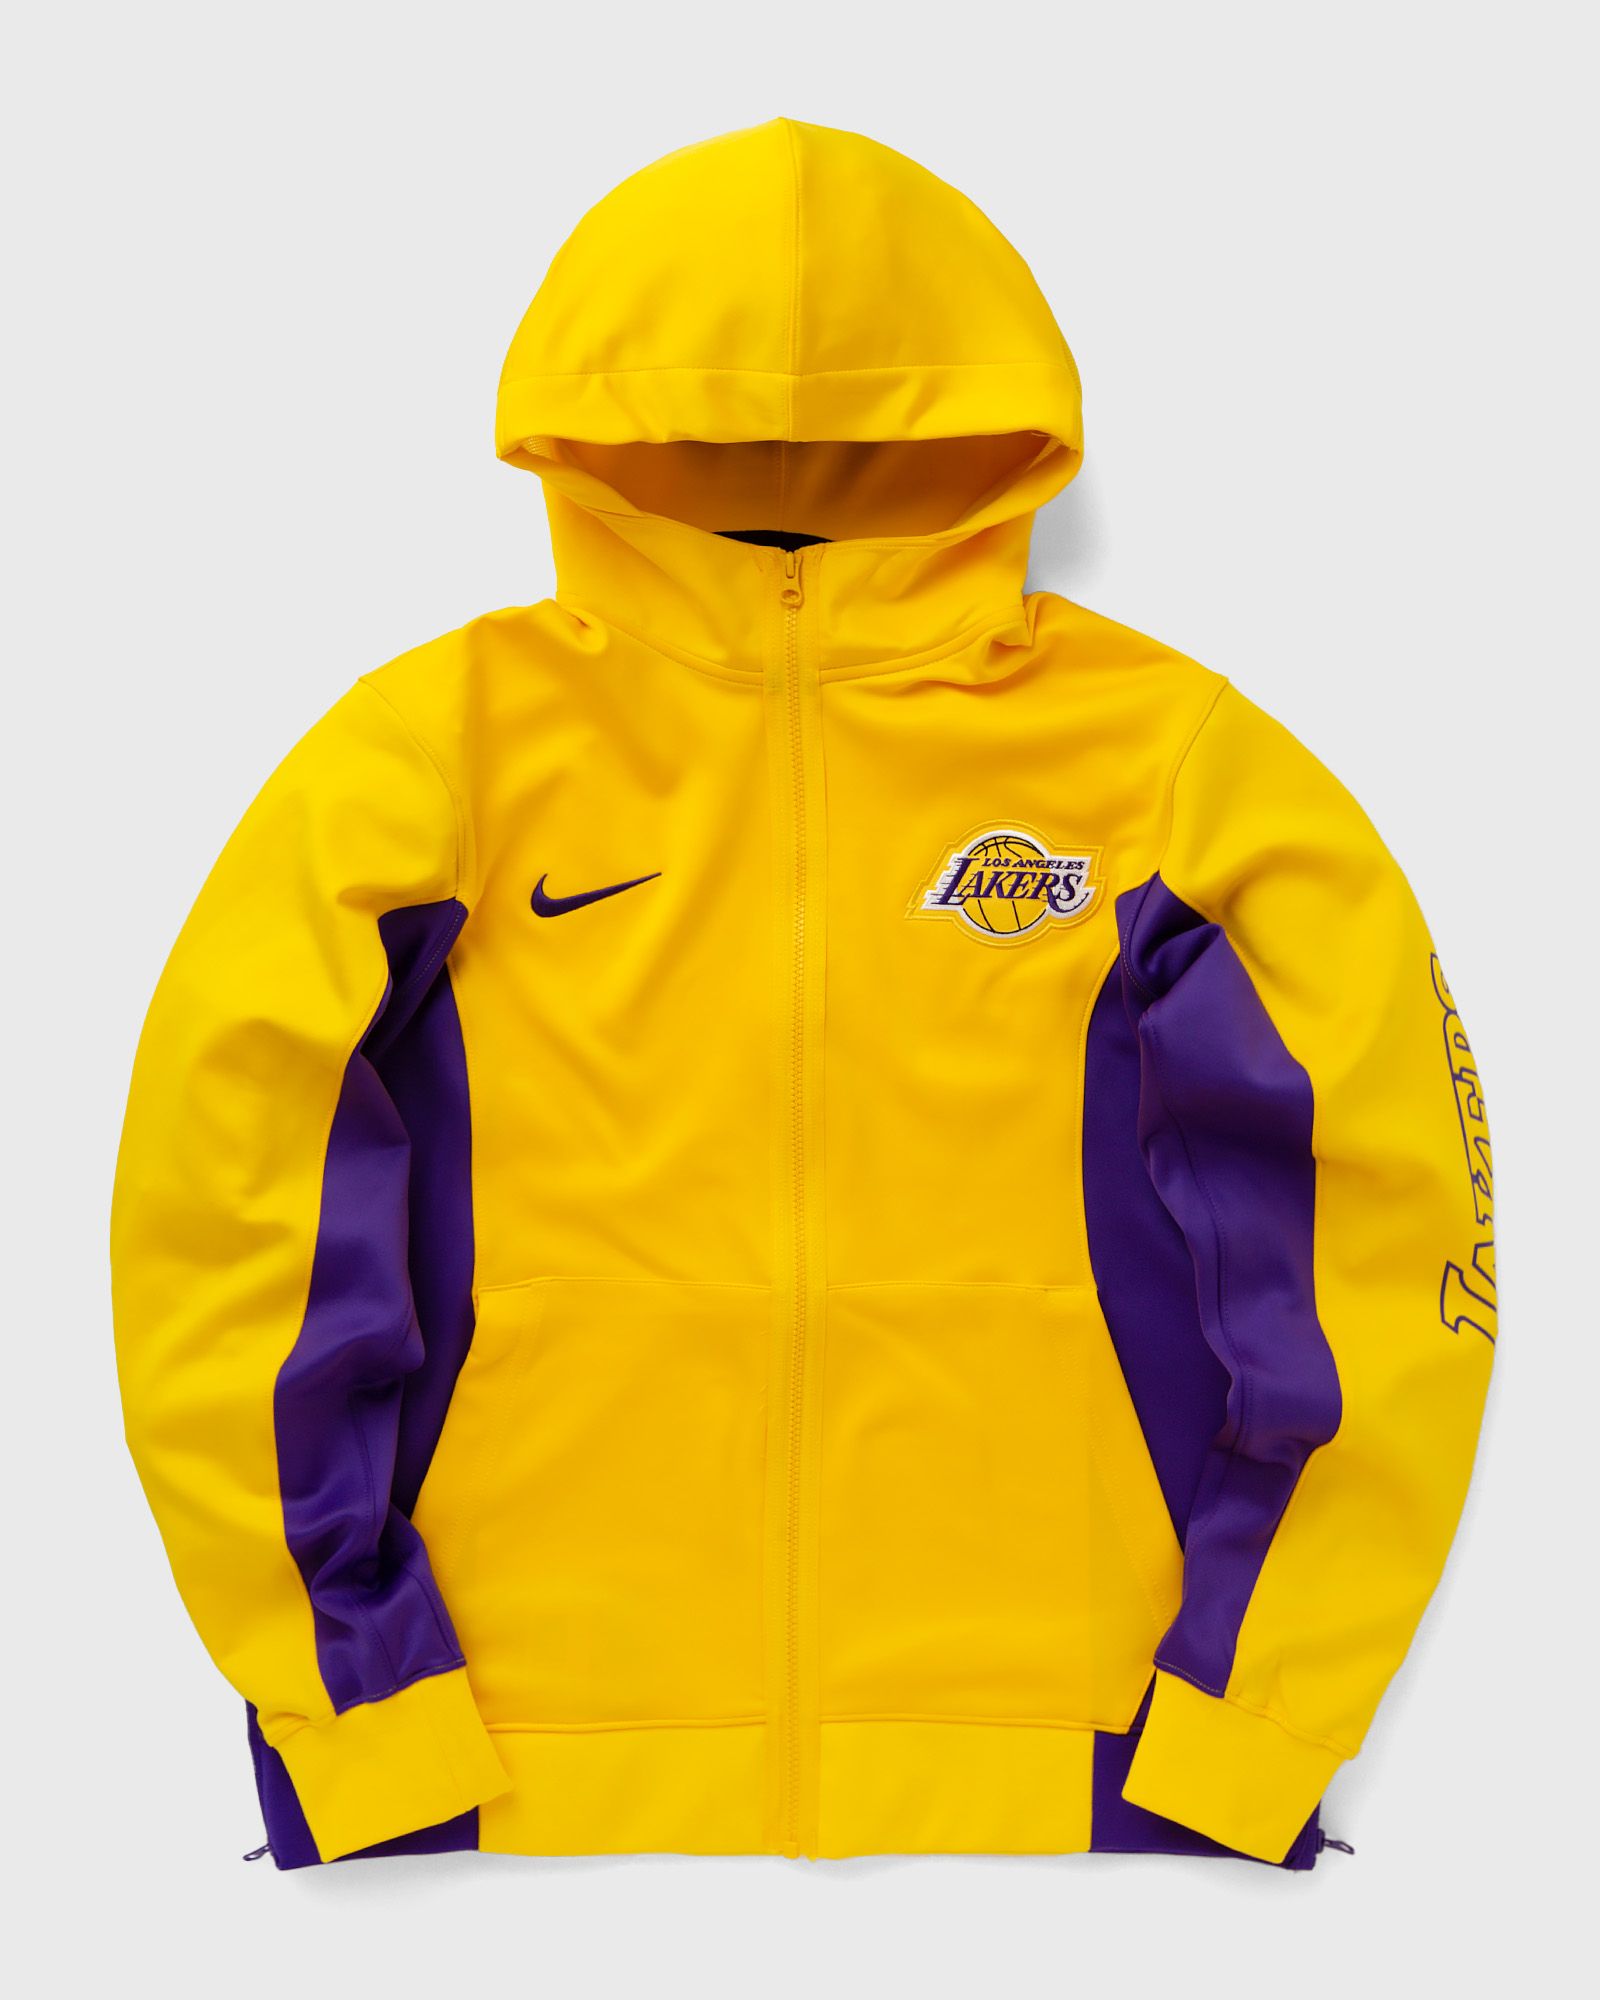 Nike - nba los angeles lakers showtime full-zip hoodie men hoodies|team sweats|zippers yellow in größe:xxl